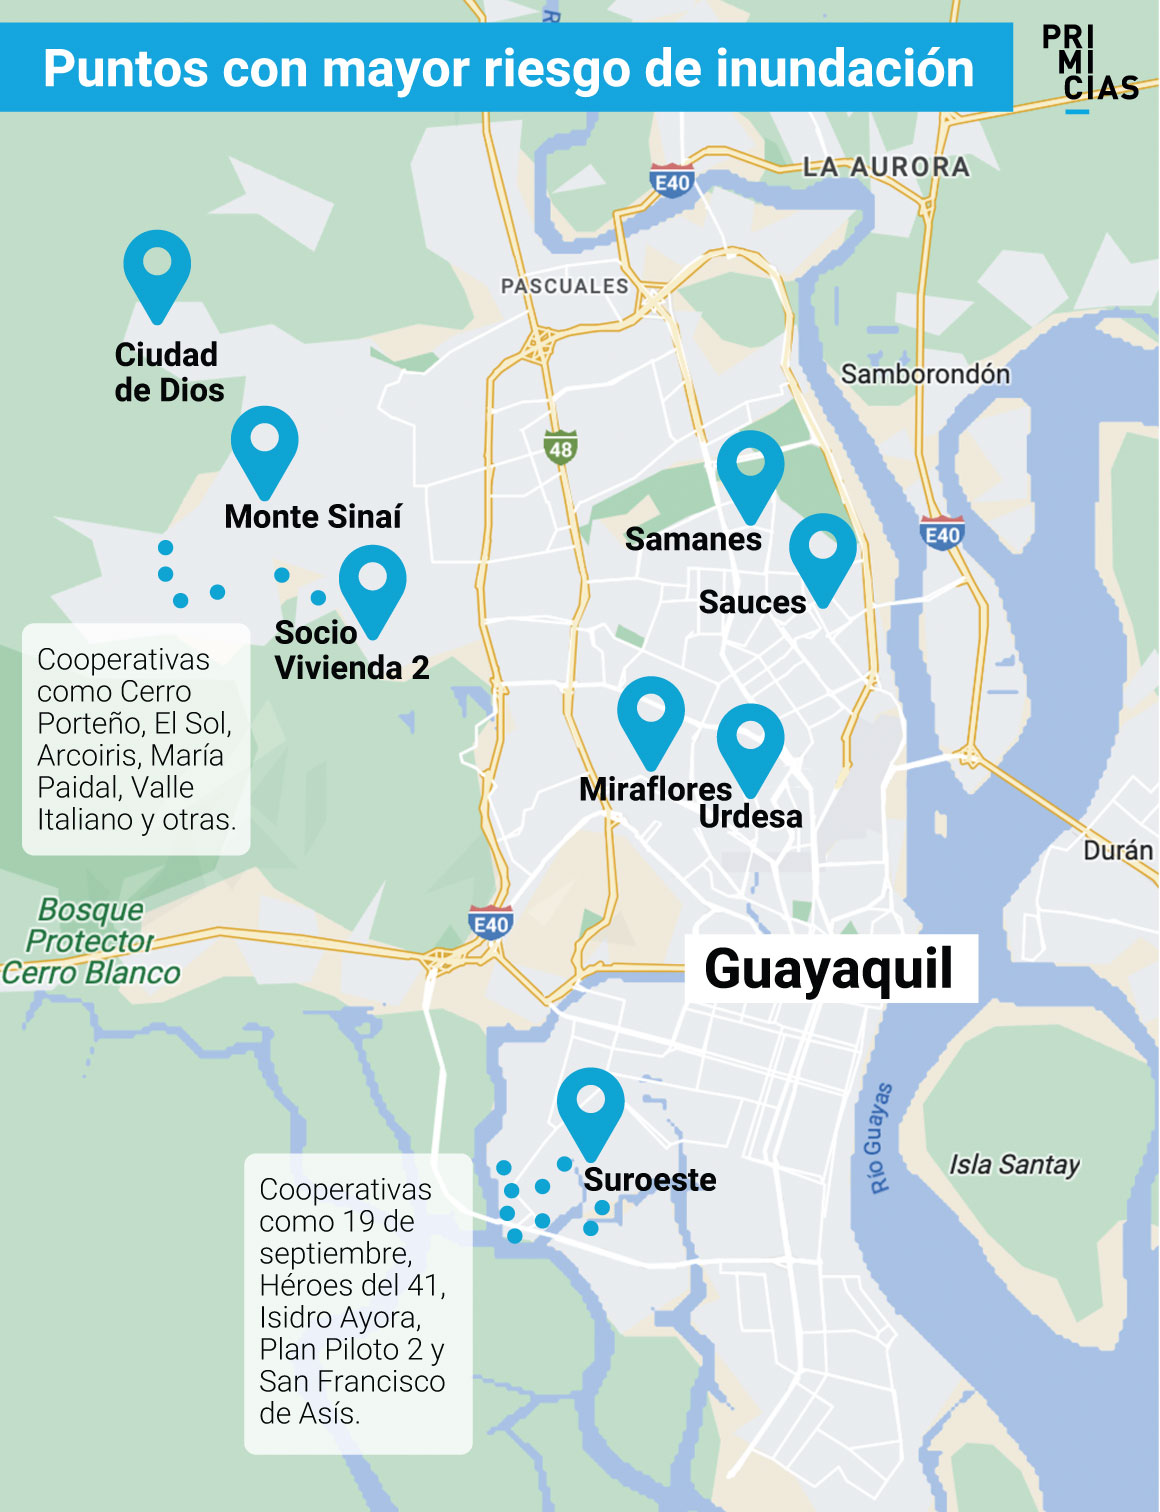 Sectores vulnerables a inundaciones Guayaquil